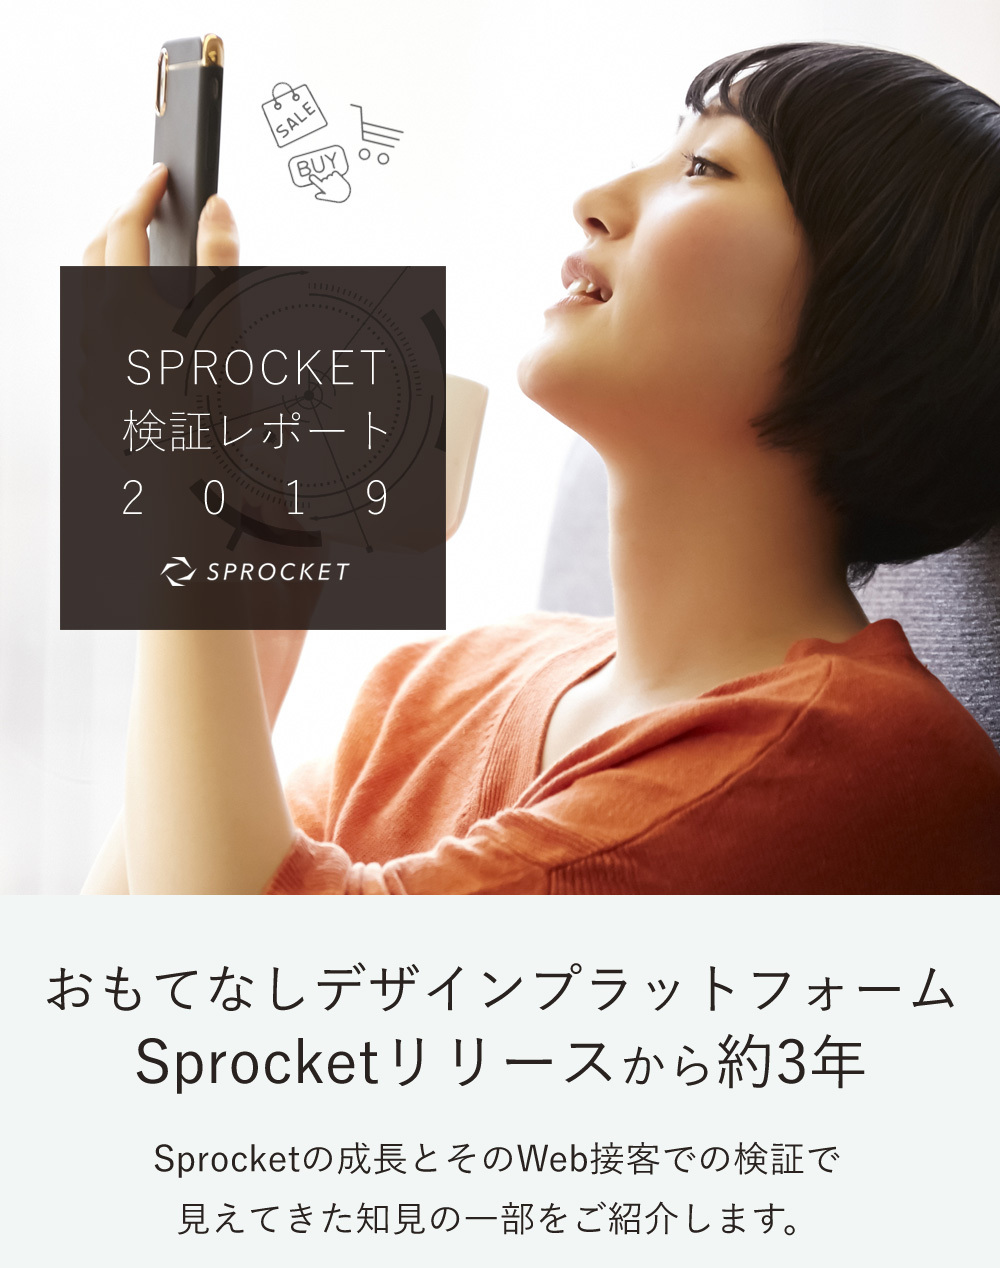 Sprocket、2019年度実績をインフォグラフィクスとして公開